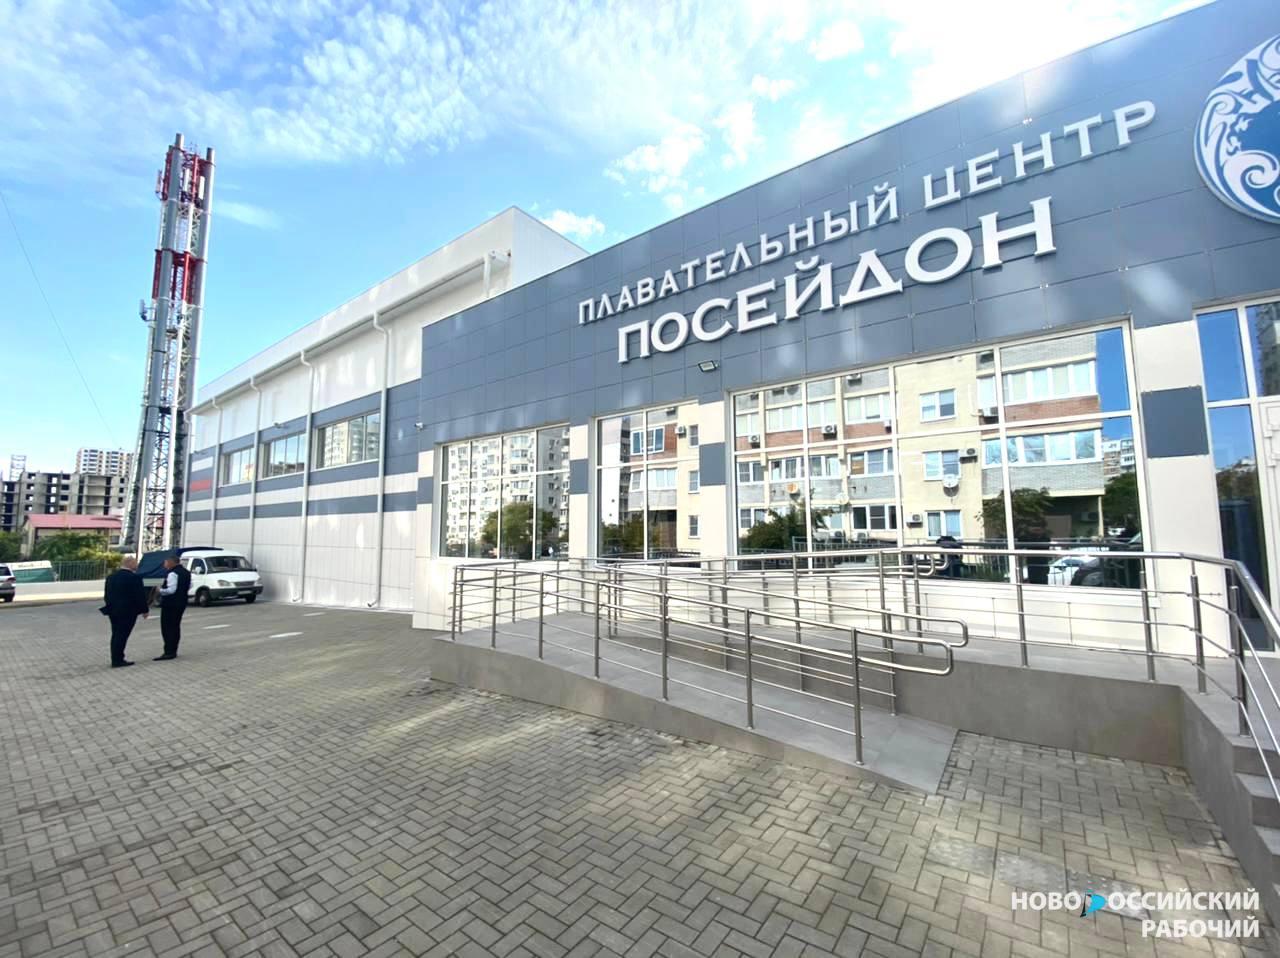 В Новороссийске заканчивается строительство водного центра «Посейдон». Как там внутри?